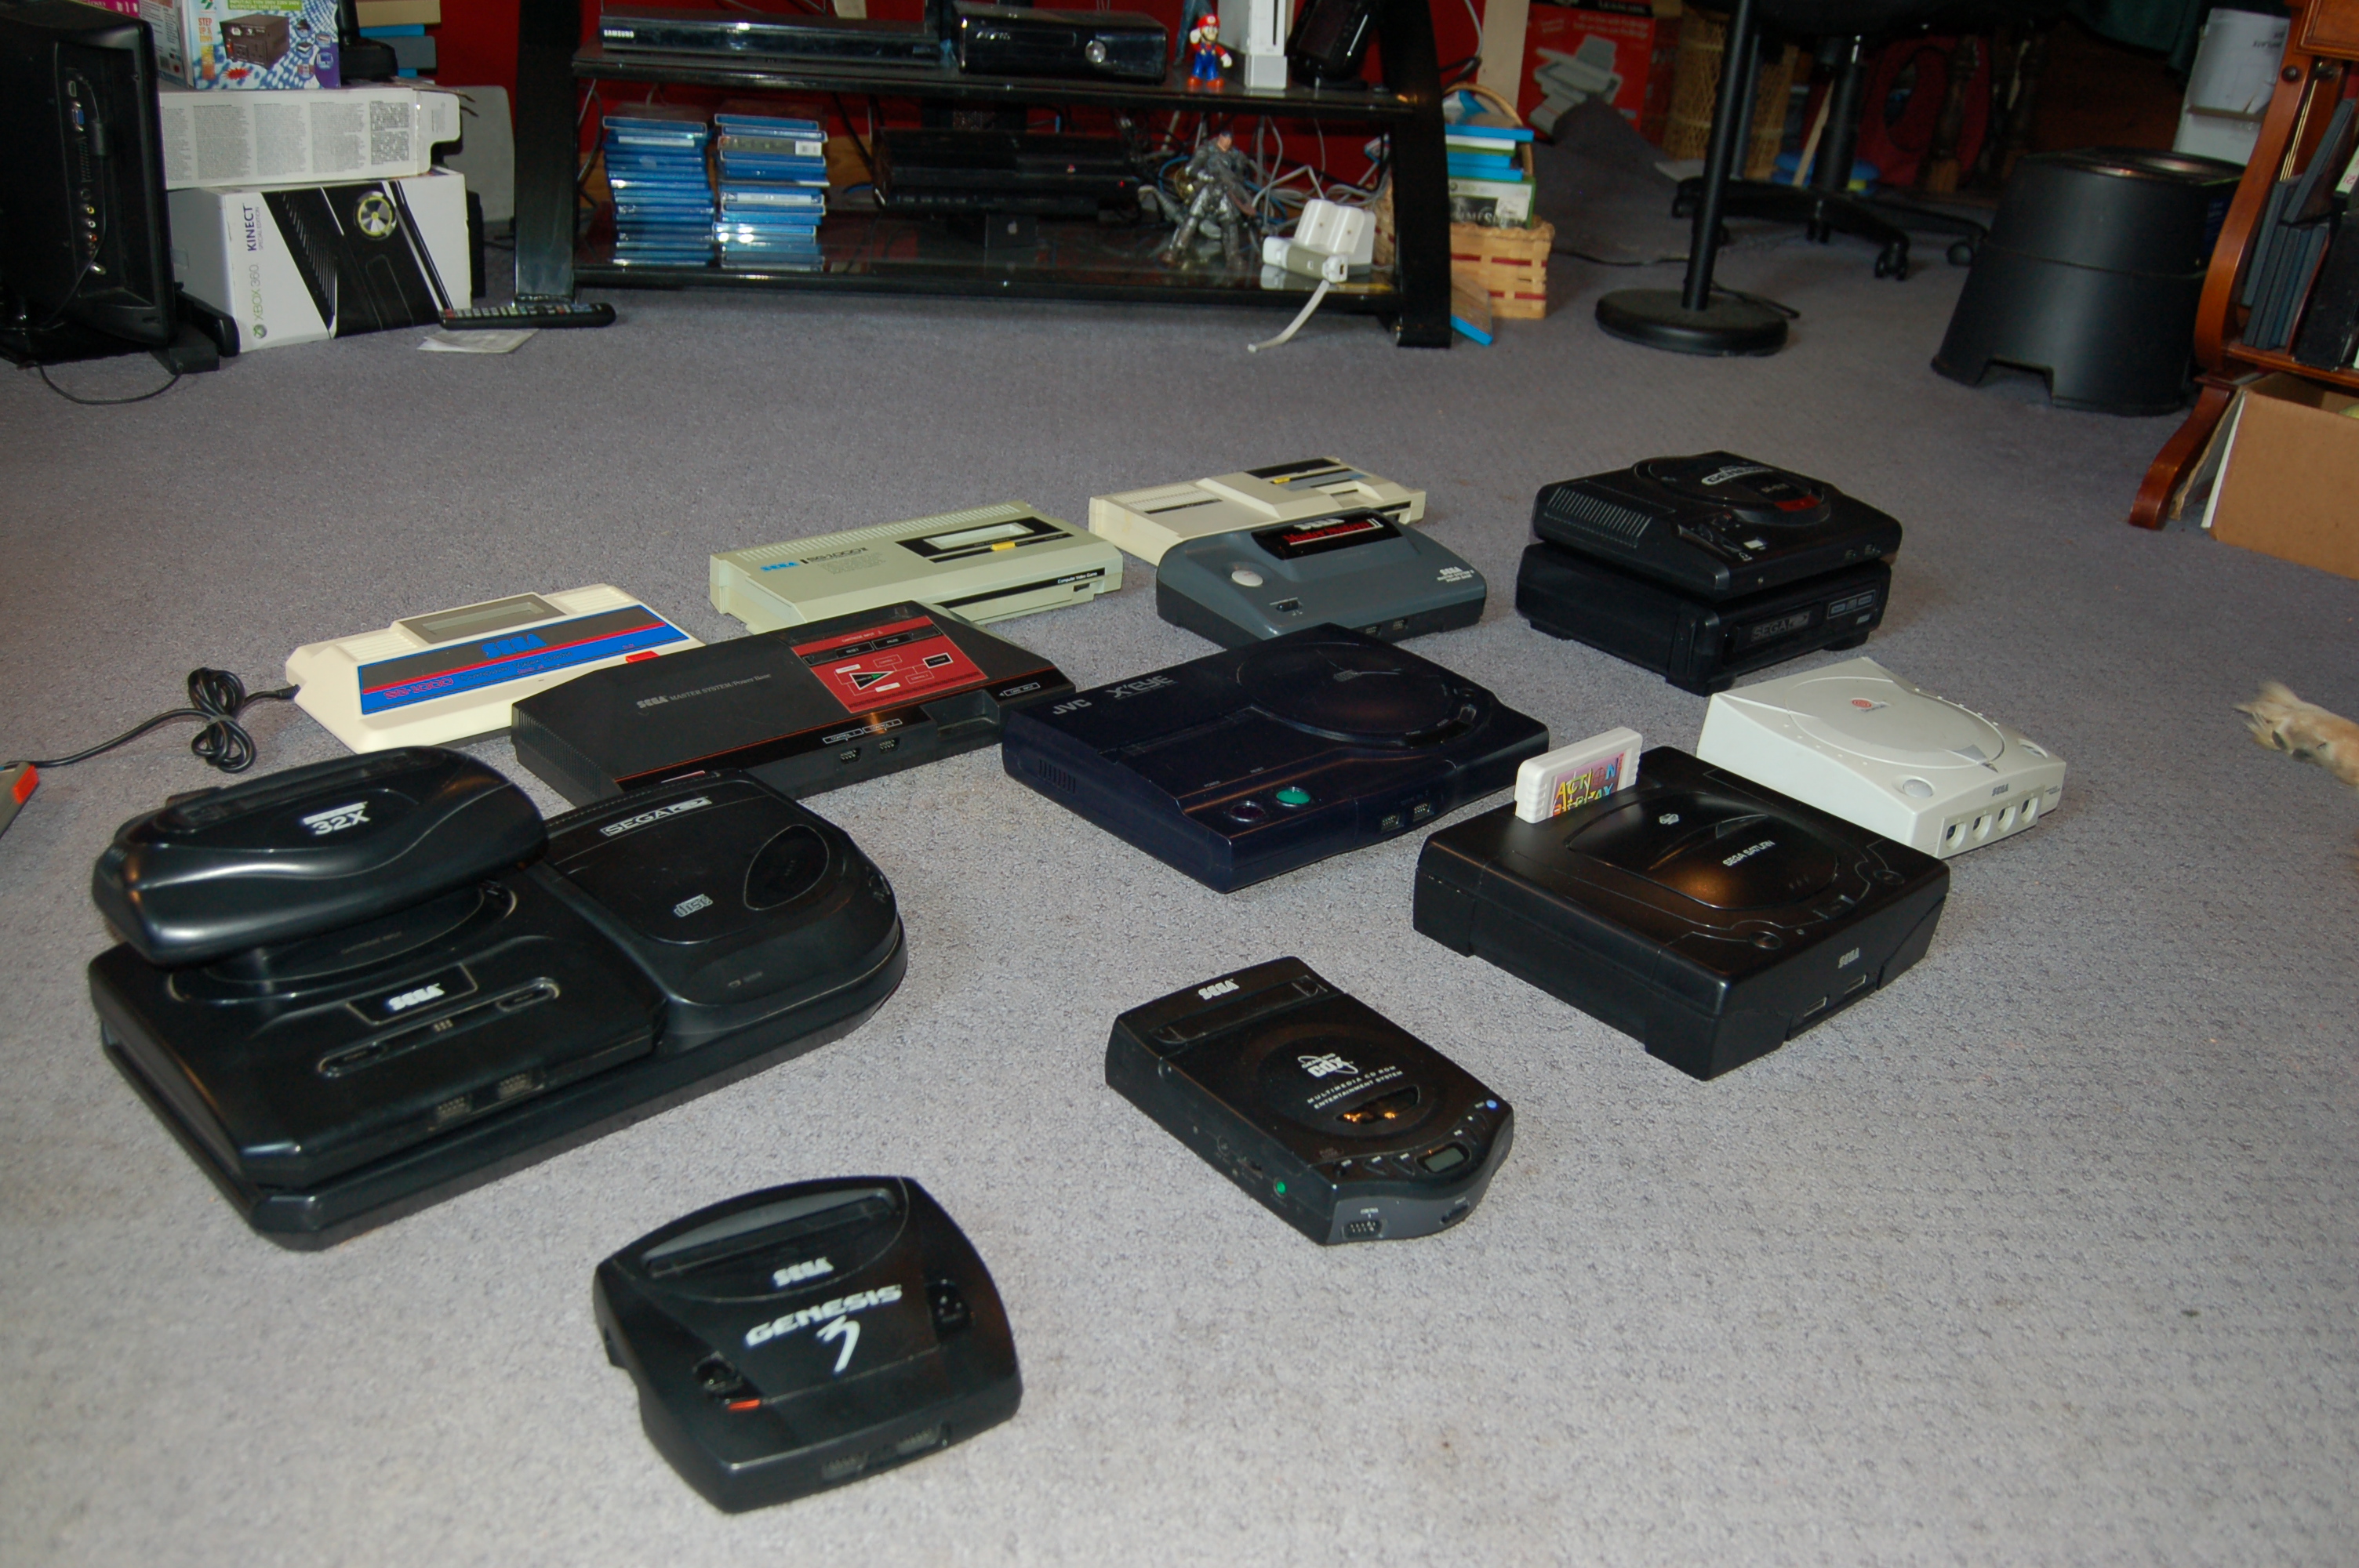 SG-1000, SG-1000 II, Mark III, Master System, Master System II, Genesis 2 w/ CD and 32X, JVC X'Eye, Genesis 1 w/ CD, Genesis 3, CD-X, Saturn, Dreamcast